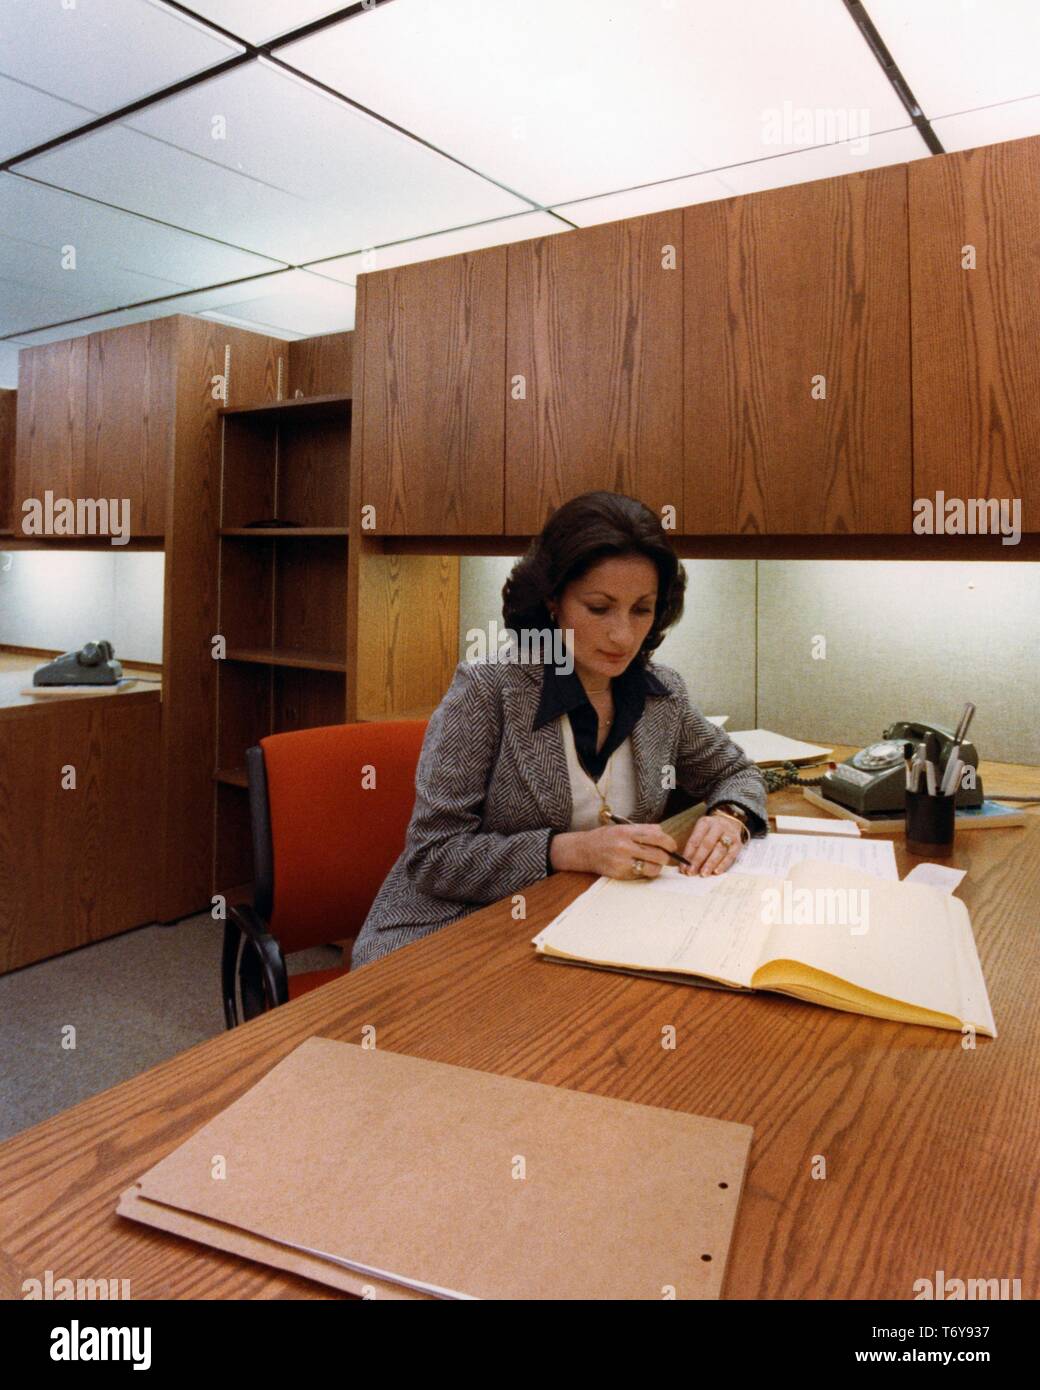 Mittellange Aufnahme eines weiblichen Mitarbeiter, an einem Schreibtisch mit energieeffizienter Beleuchtung ausgestattet, an der Norris Baumwolle Federal Building, Manchester, New Hampshire, 1975. Mit freundlicher Genehmigung des US-Ministeriums für Energie. () Stockfoto